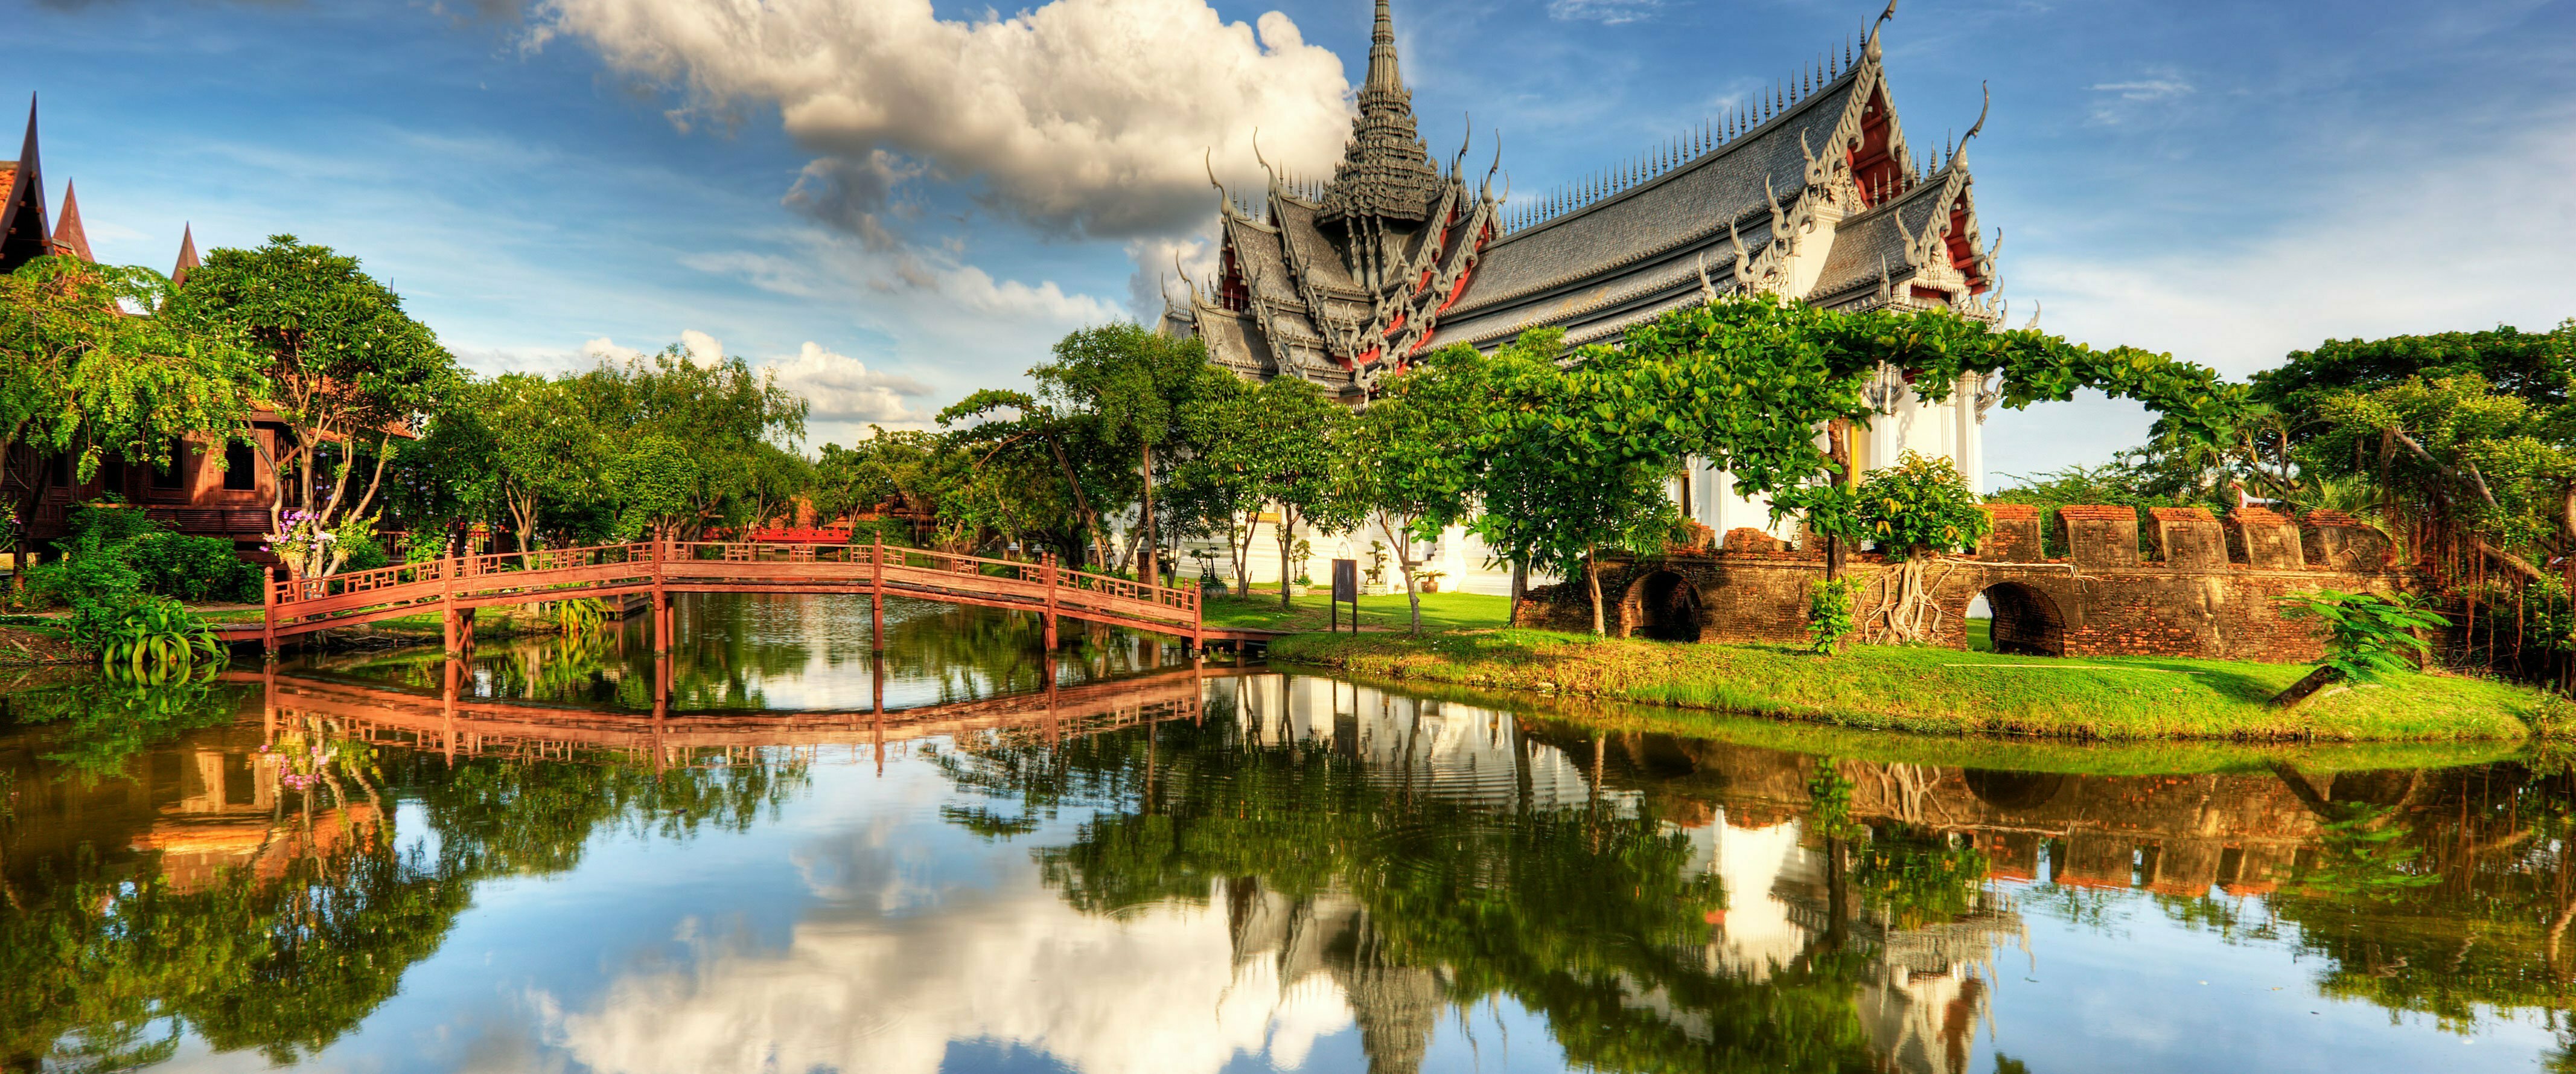 Temple, pont et nature en Thailande